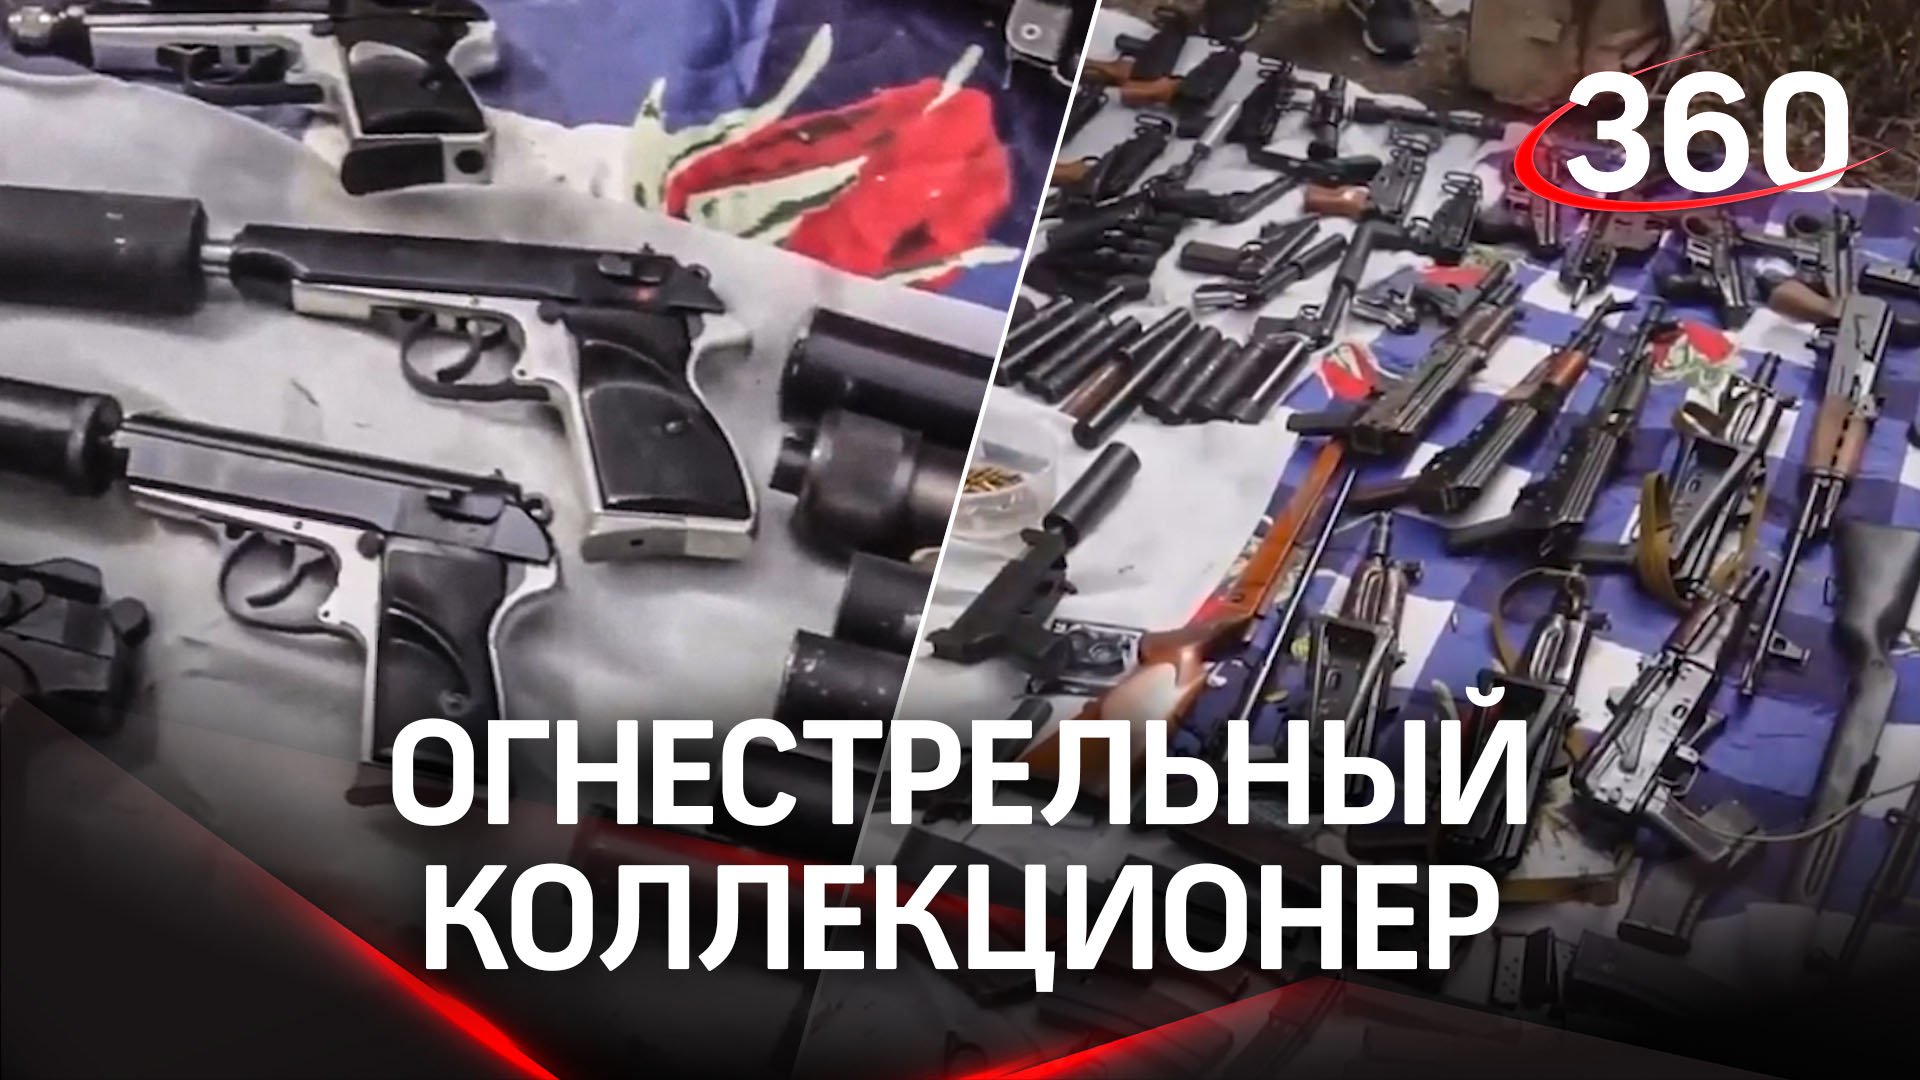 Арсенал огнестрельного оружия изъяли в подмосковном Лосино-Петровском